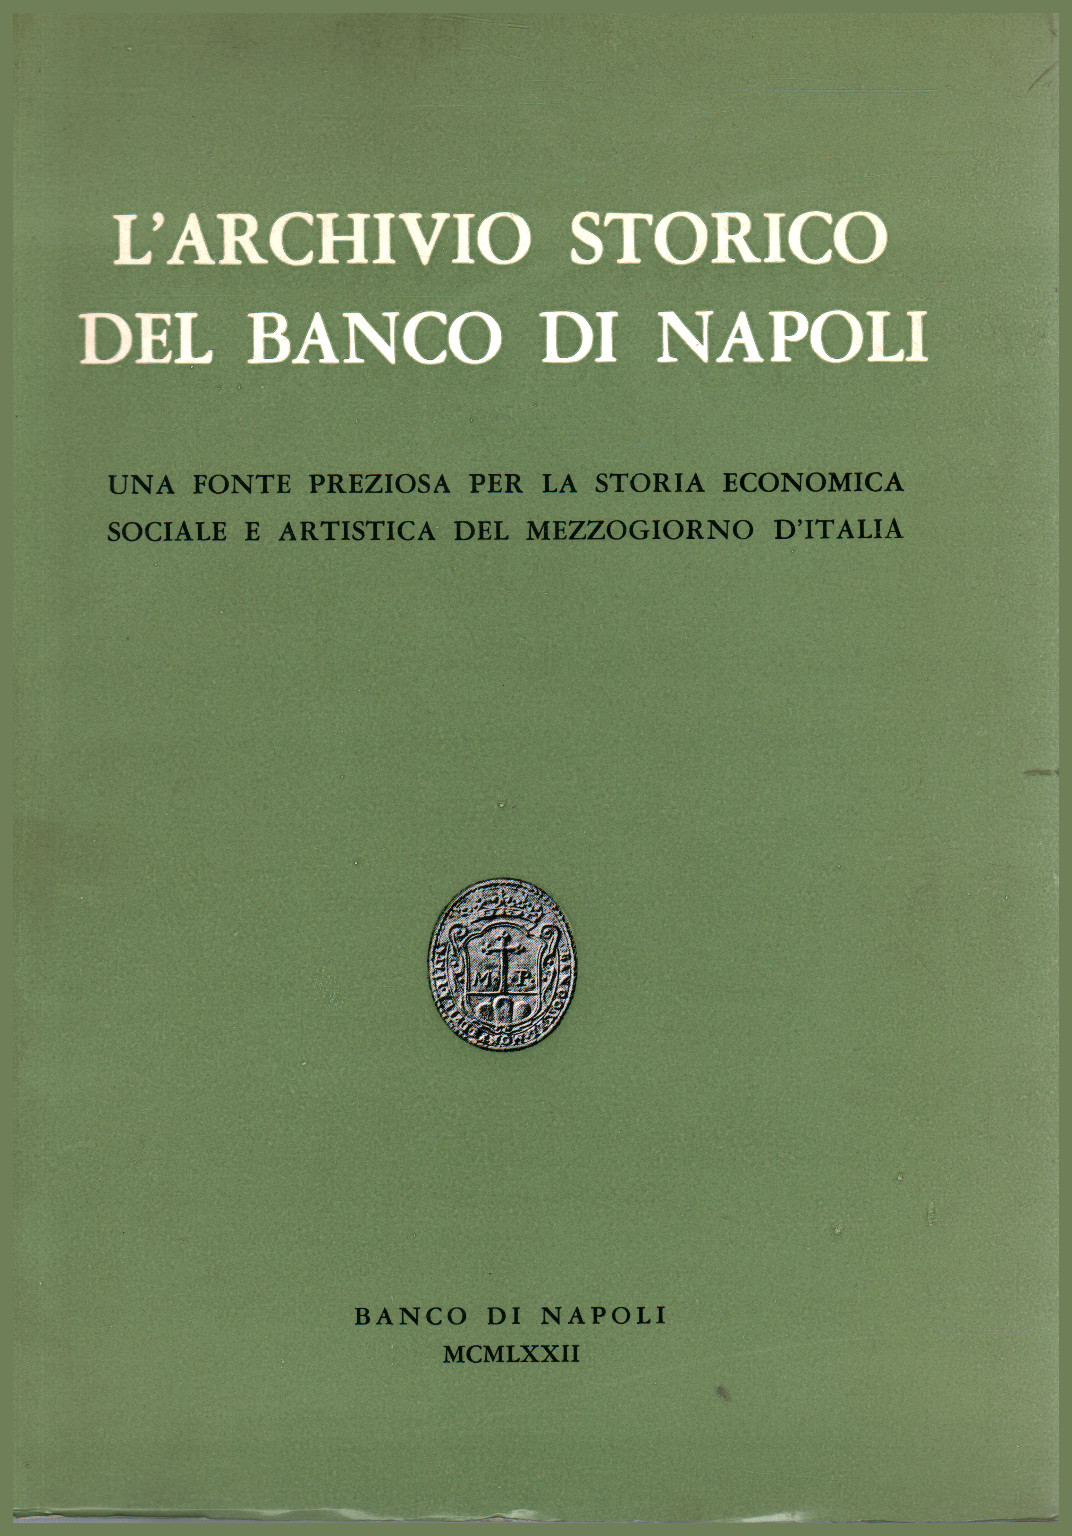 L Archivio Storico del Banco di Napoli, s.a.